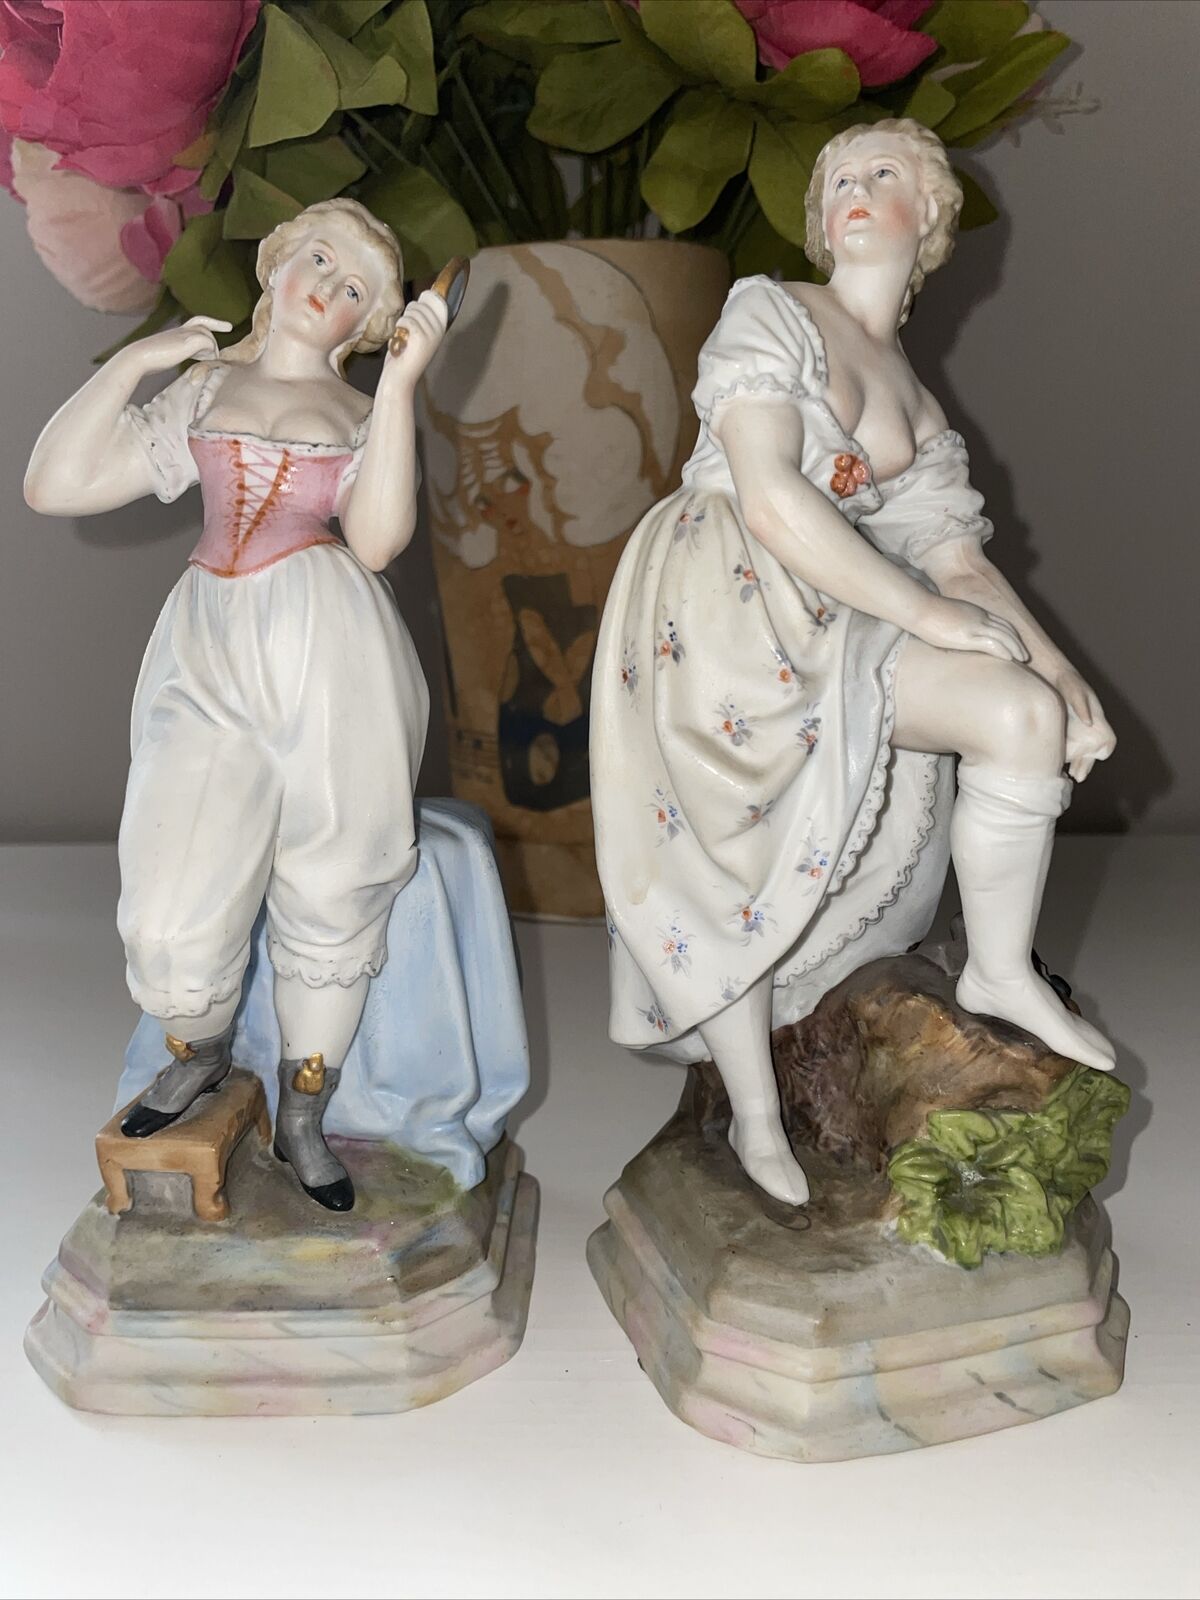 Antique Bisque Porcelain German Lady Woman Figurine Figure Burlesque Victorian